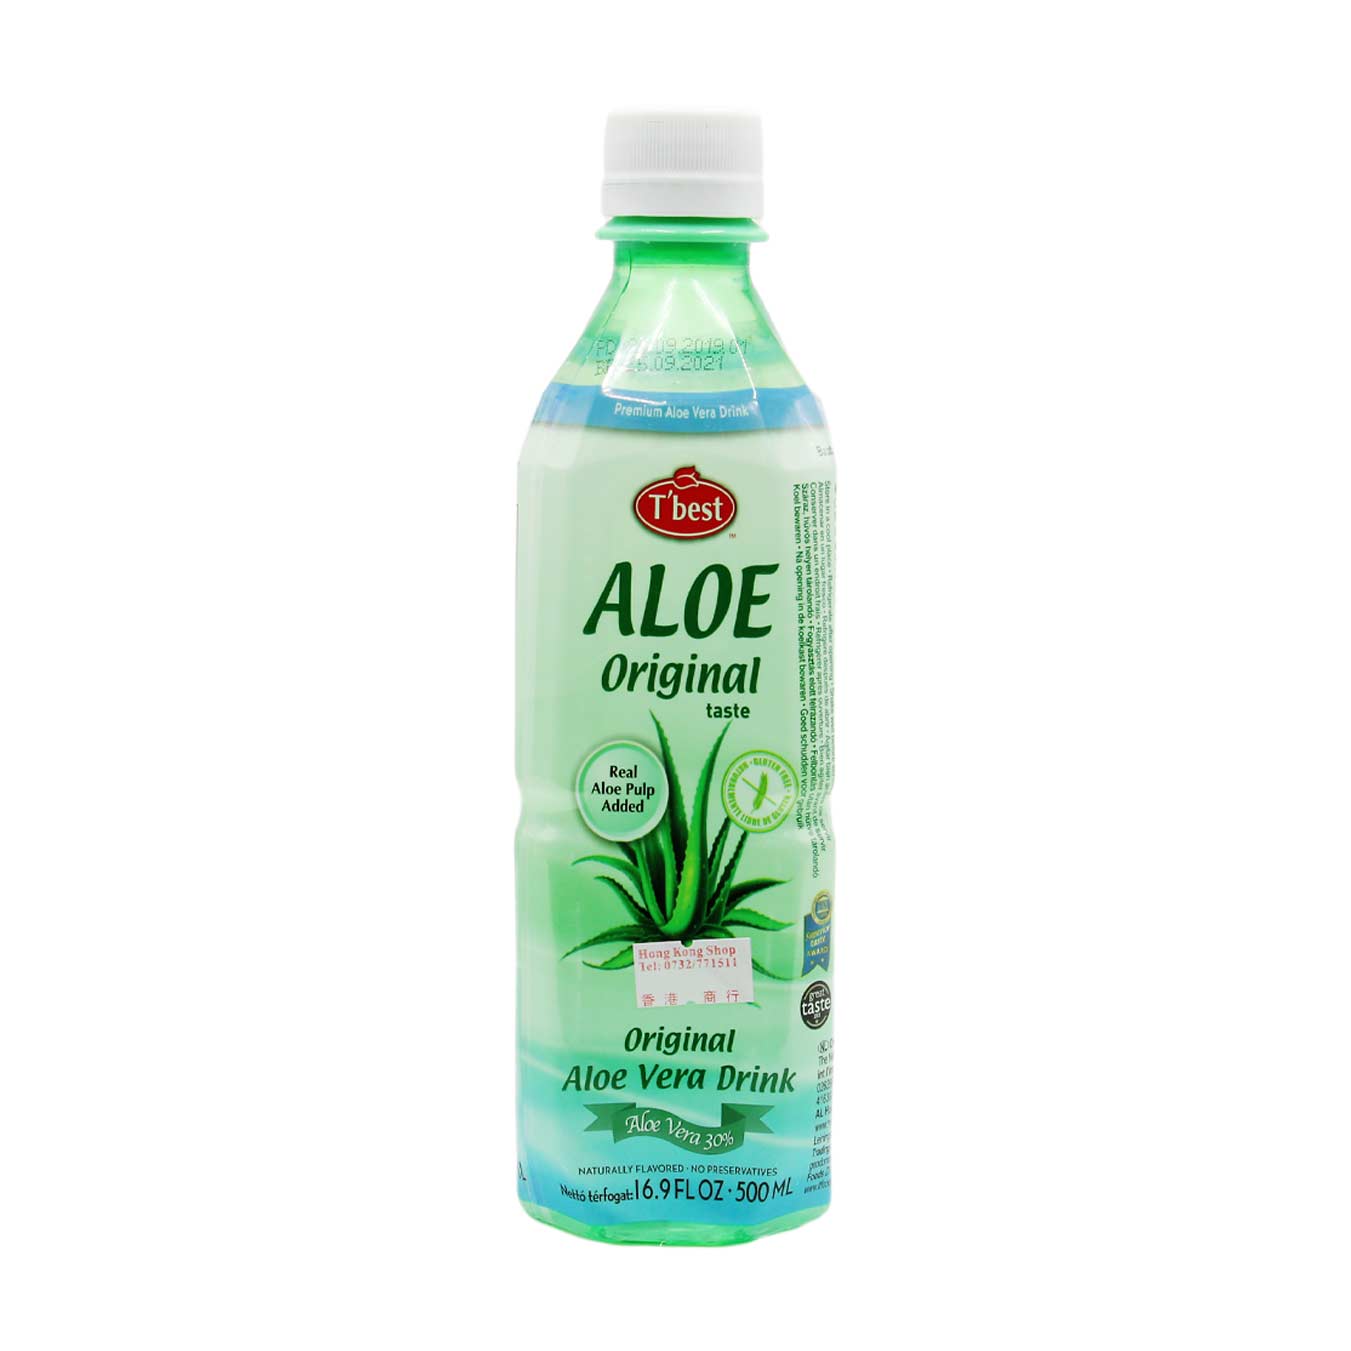 vermoeidheid Gelach Bourgeon Aloe Vera Drink, T'best, 0.5L online kaufen | Hongkongshop.at